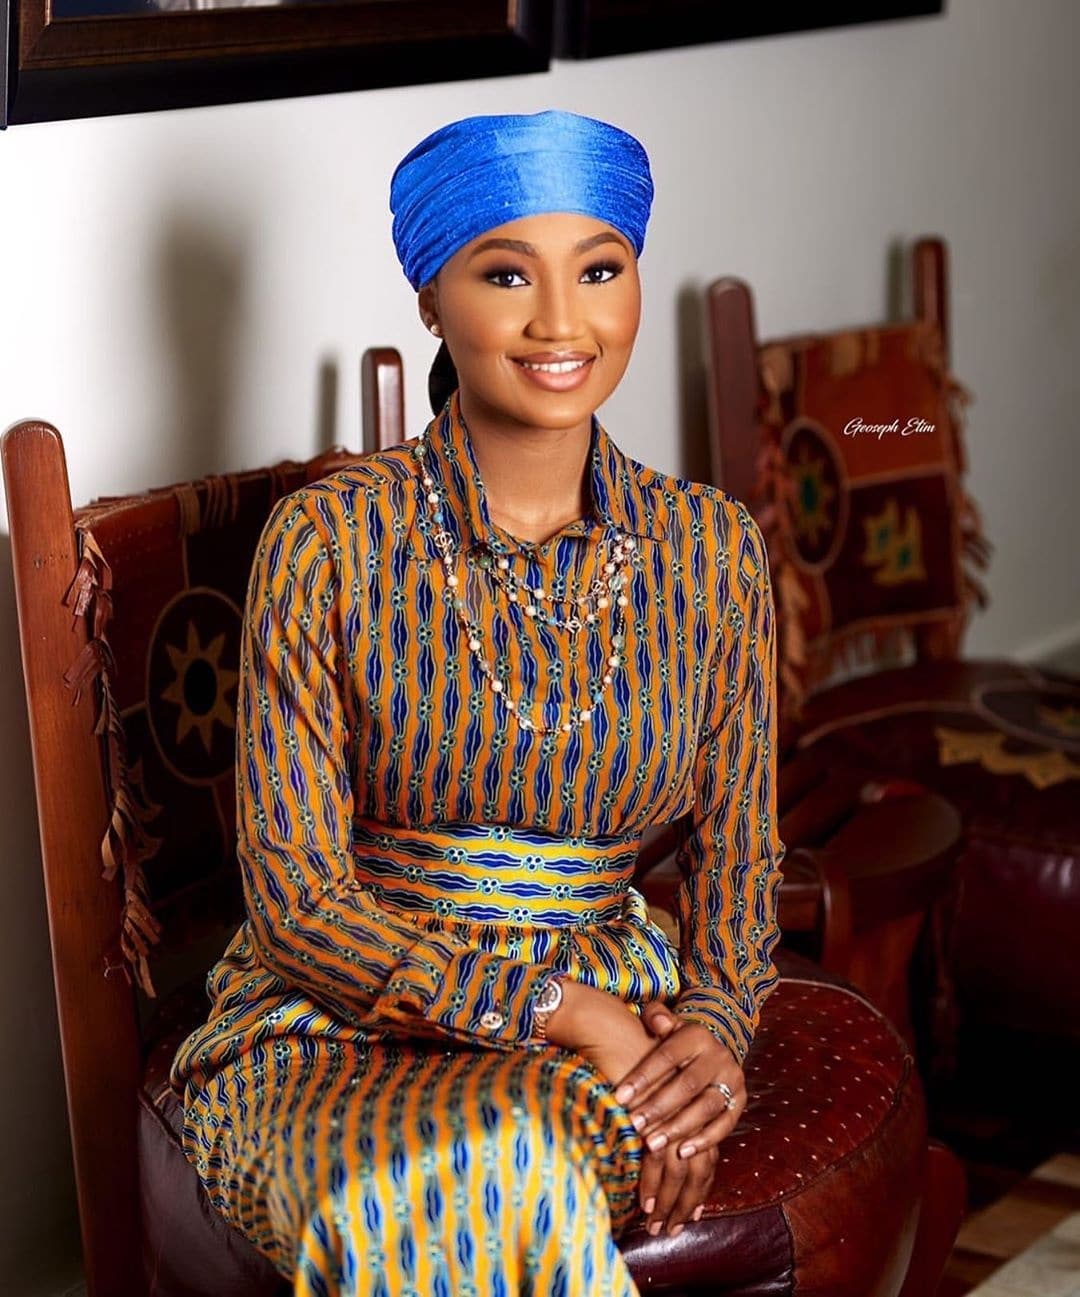 meet-mmeka-ronald-chinedu-ronaldthe7th-the-makeup-artist-beautifying-nigerian-women